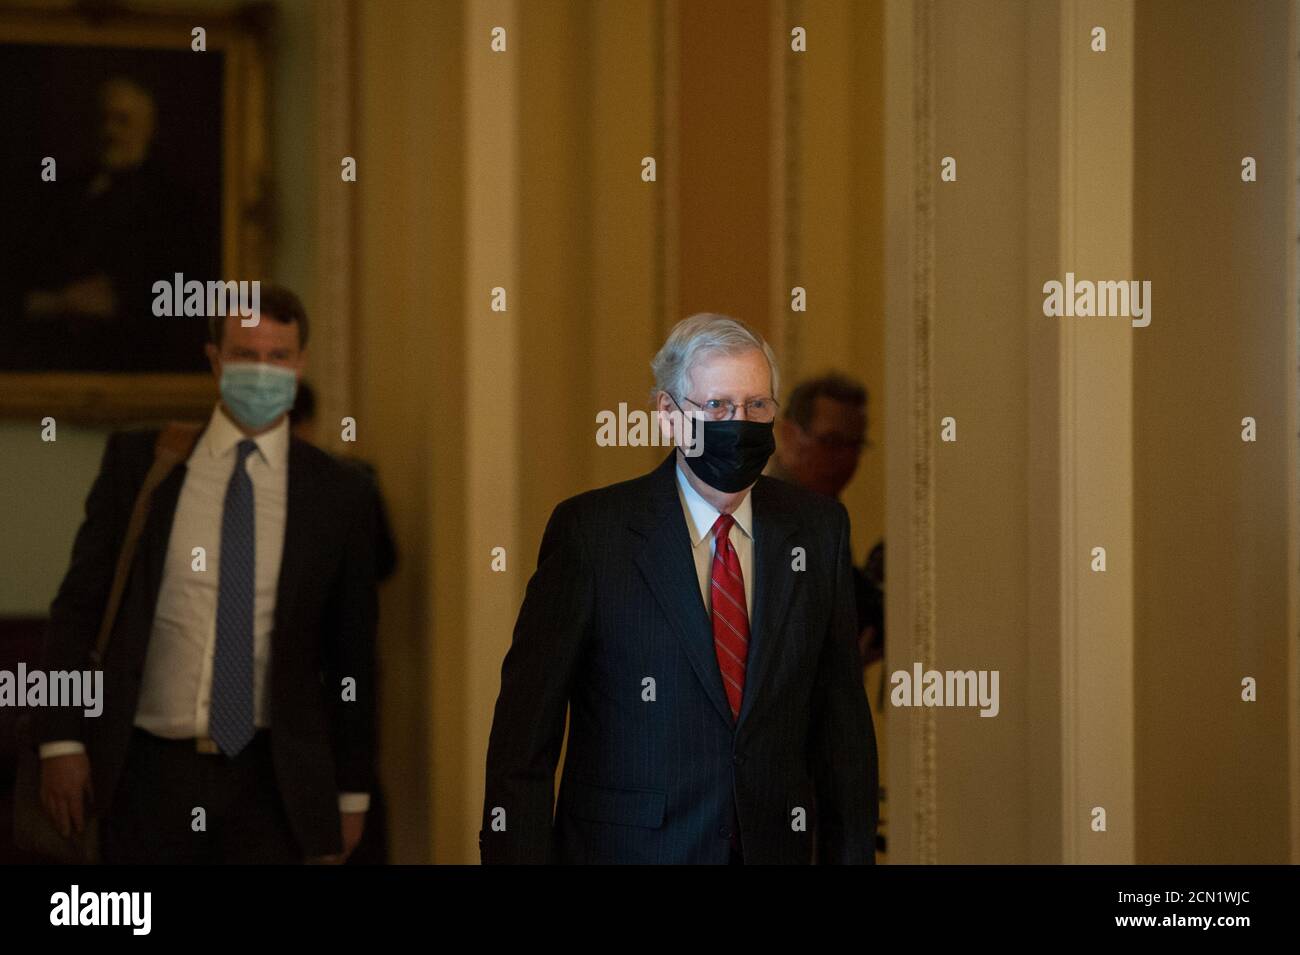 Mitch McConnell (républicain du Kentucky), chef de la majorité au Sénat américain, se rend à son bureau alors qu'il arrive pour la journée au Capitole des États-Unis à Washington, DC., le jeudi 17 septembre 2020. Crédit : Rod Lamkey/CNP/MediaPunch Banque D'Images